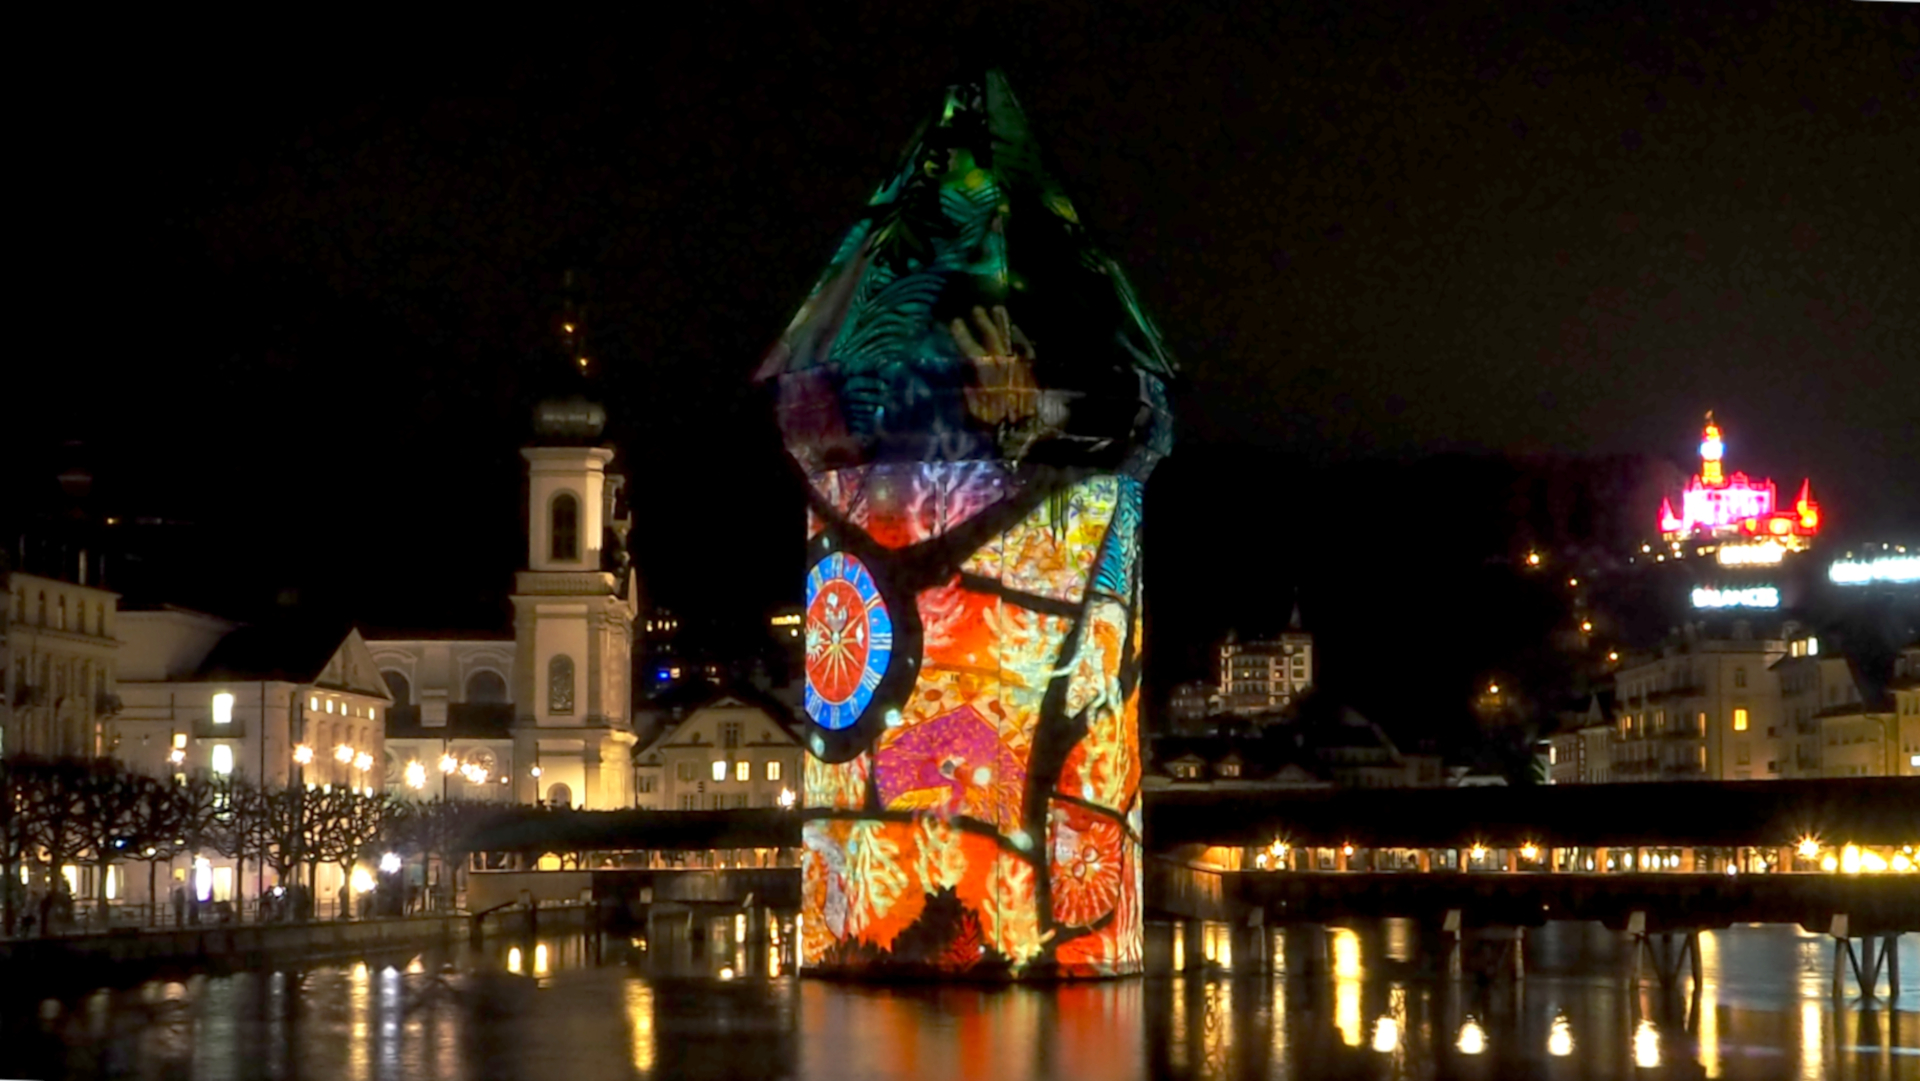 Lichterfestival in Luzern